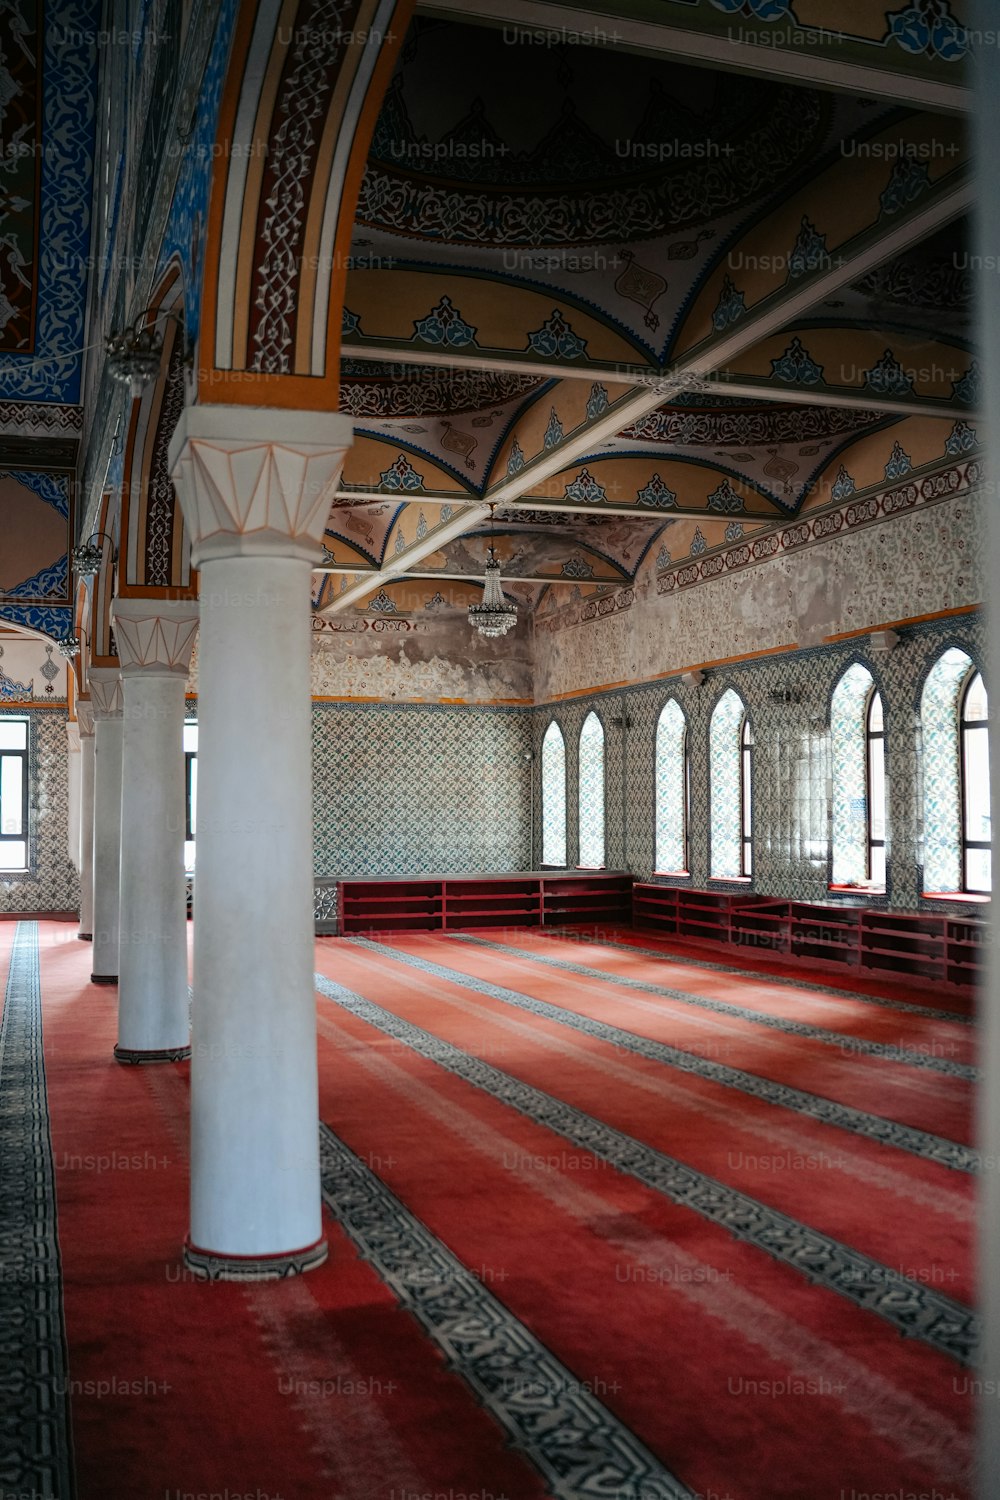 Ein großer Raum mit rotem Teppich und weißen Säulen